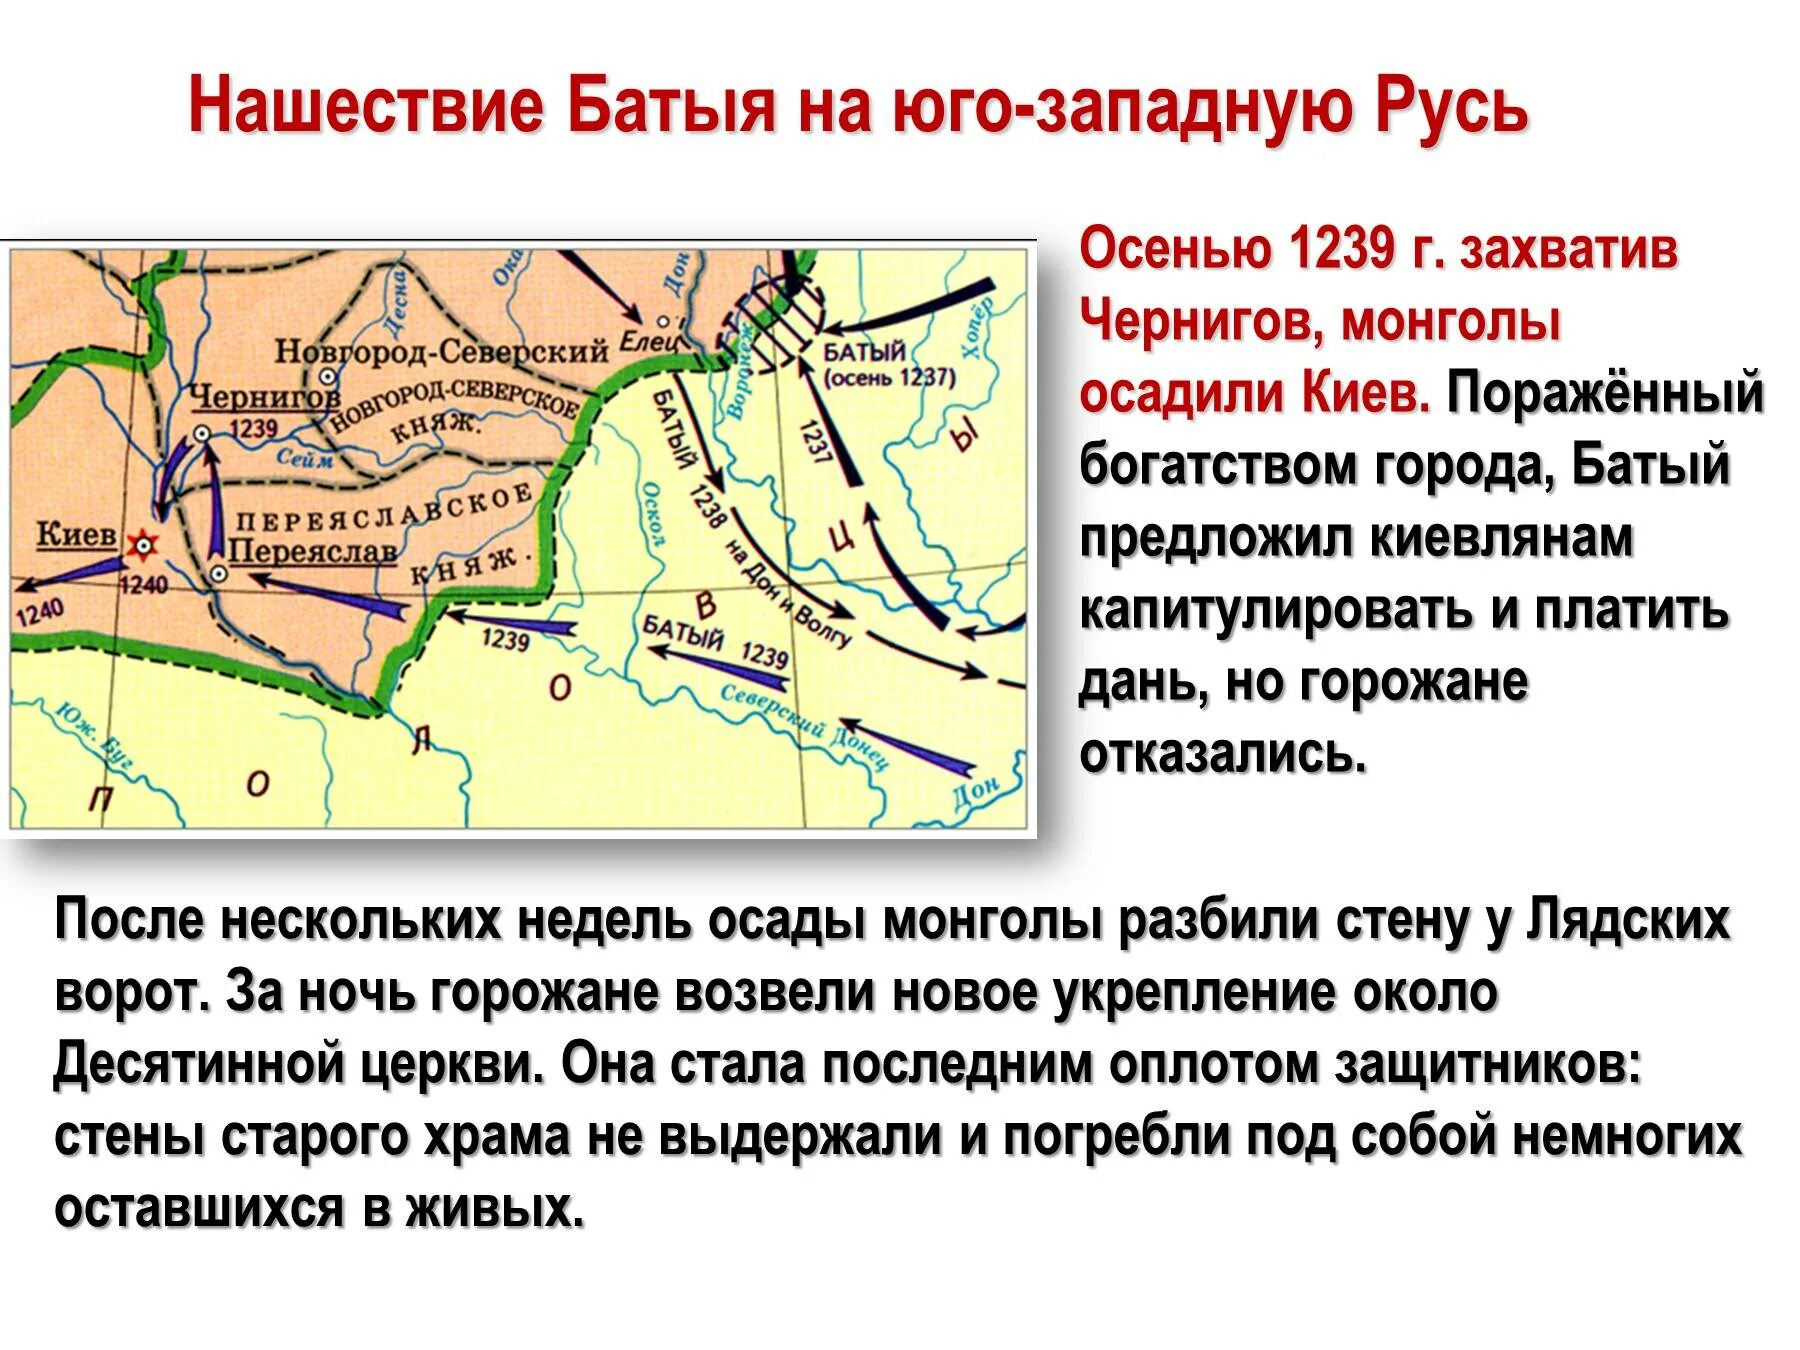 Нашествие хана Батыя 1237. Поход Батыя на Северо-восточную Русь. Поход Батыя на Юго-западную Русь. Нашествие Батыя на Юго-западную Русь.